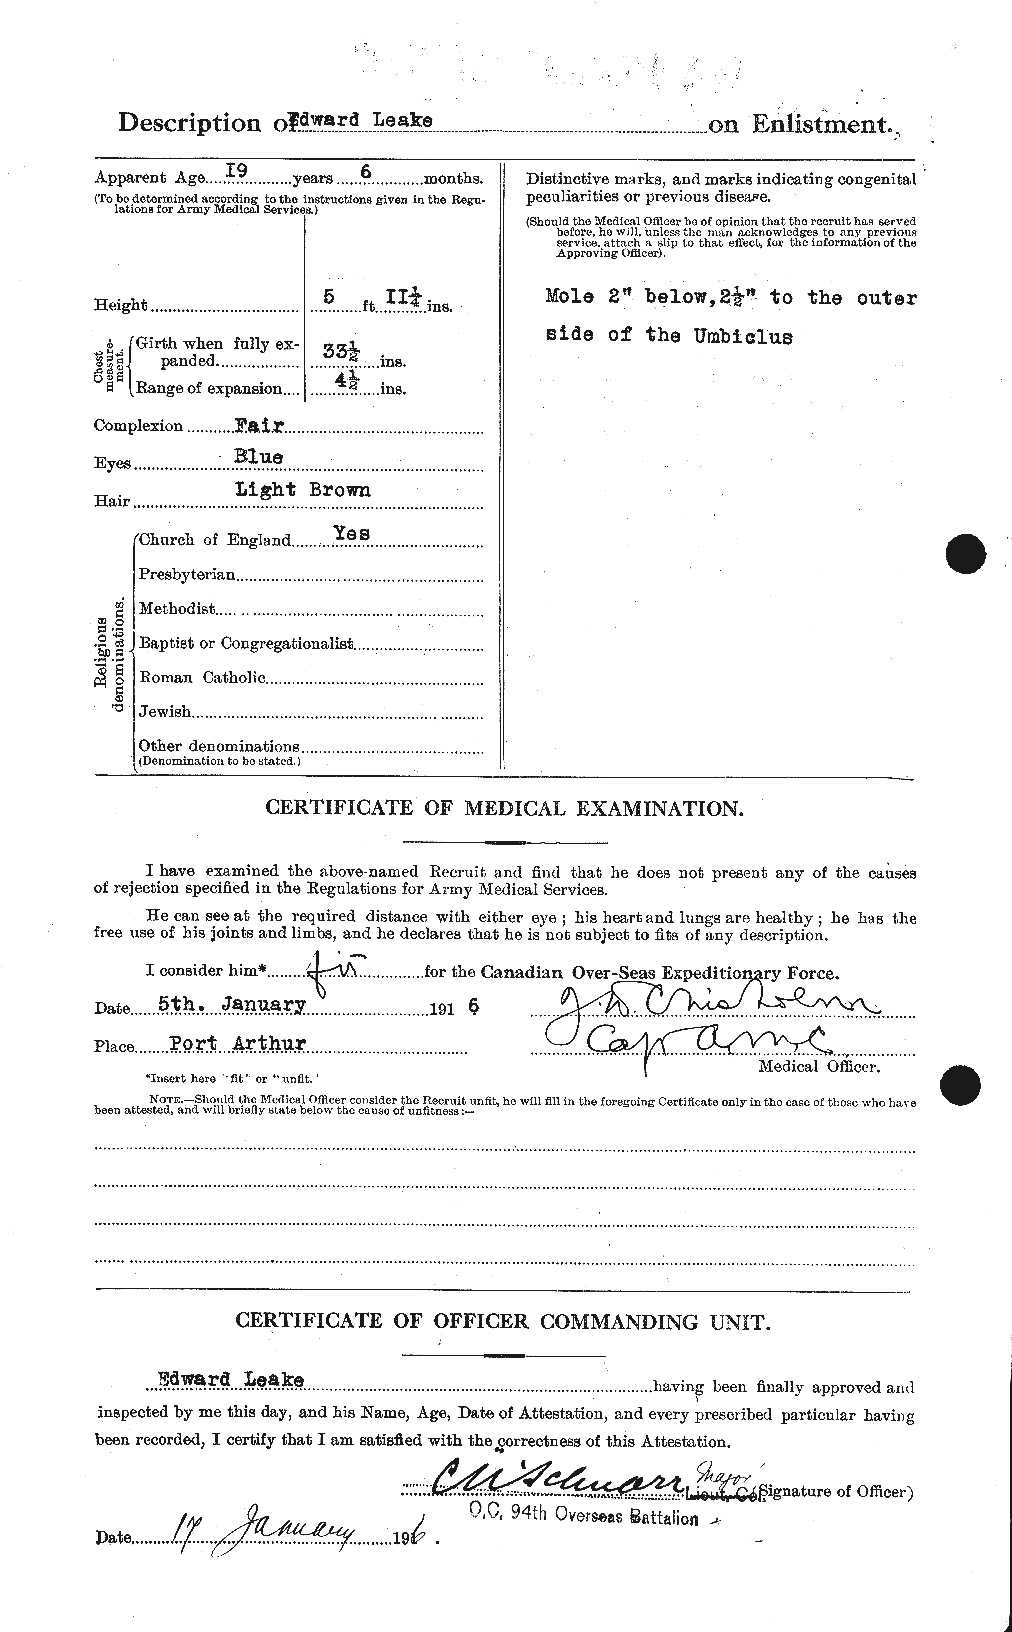 Dossiers du Personnel de la Première Guerre mondiale - CEC 455977b